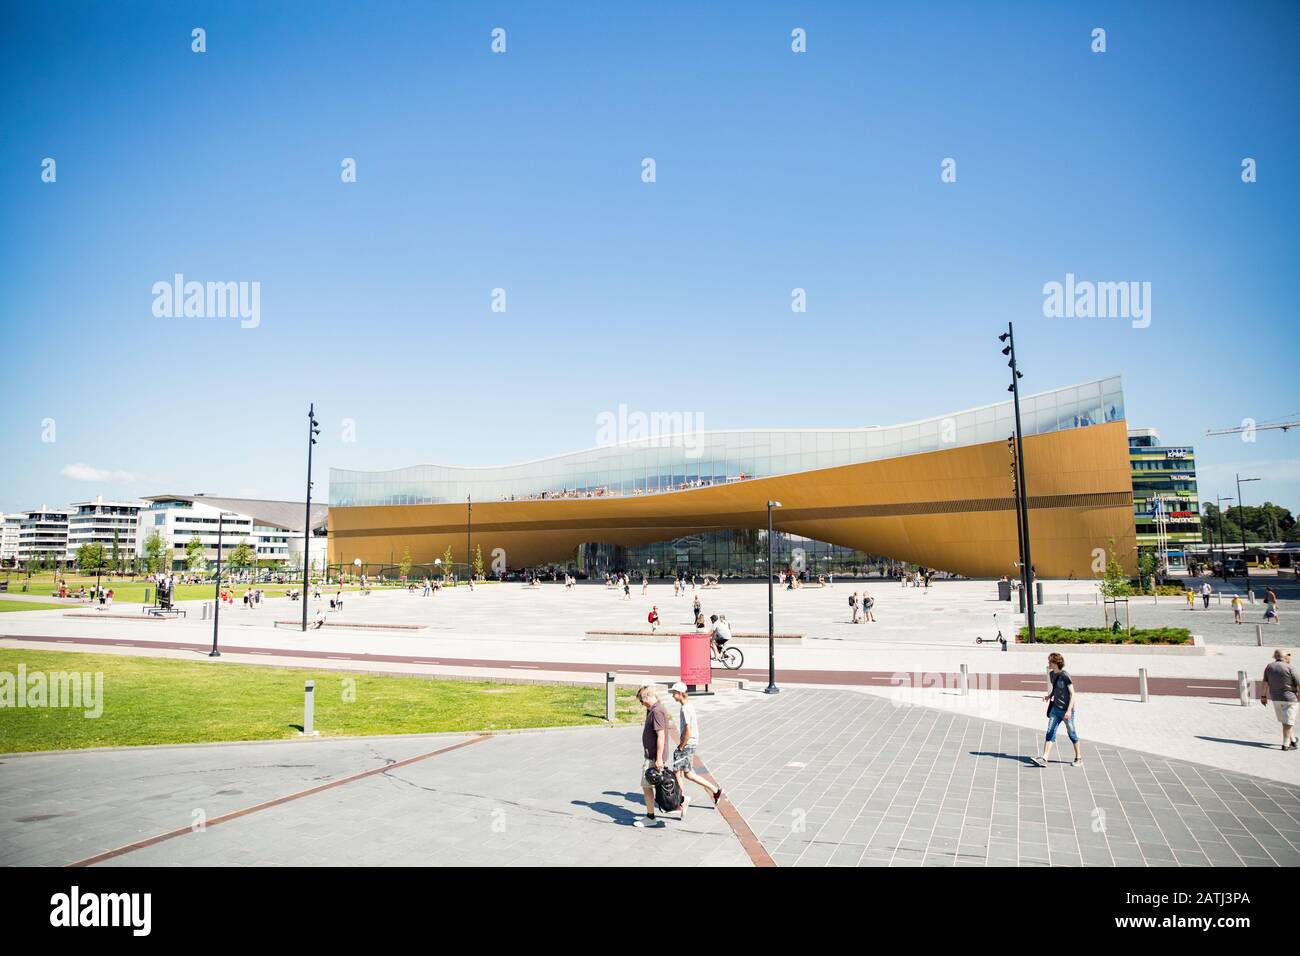 Nuova biblioteca centrale di Helsinki, esterni Oodi. Architettura settentrionale moderna. Ingresso dell'edificio sulla piazza della città, soleggiata giornata estiva. Foto Stock